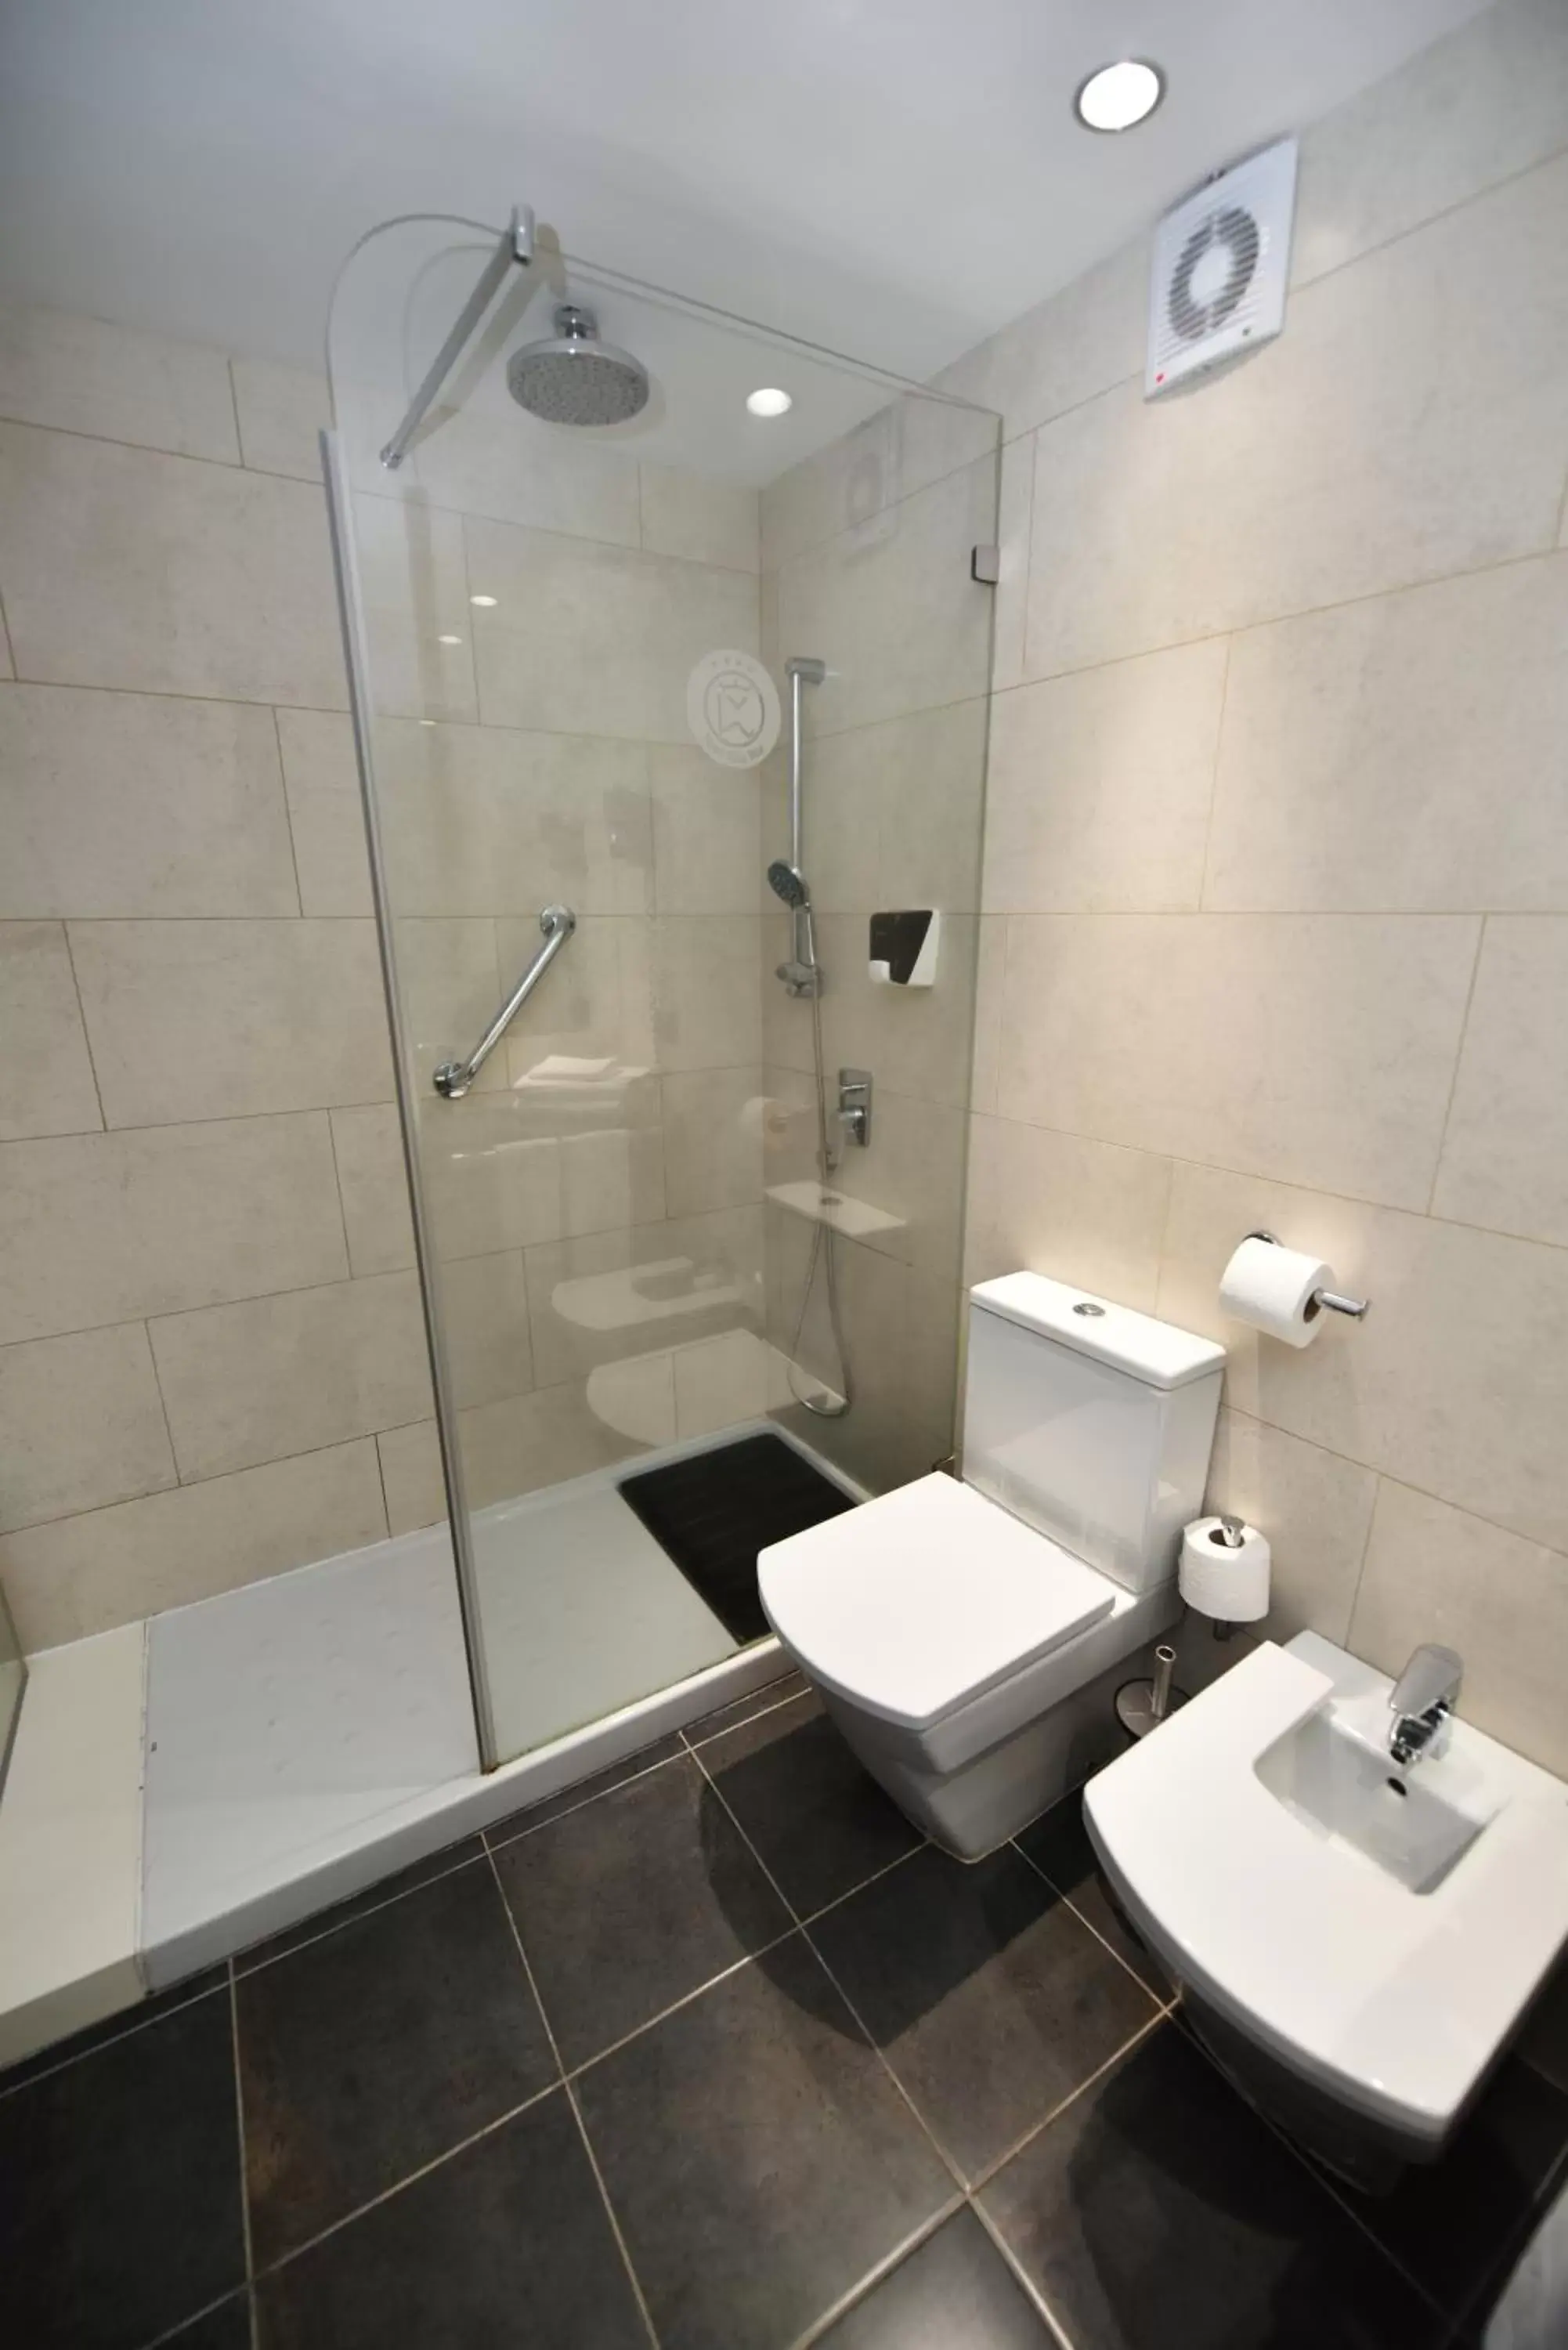 Bathroom in Hotel Vallemar